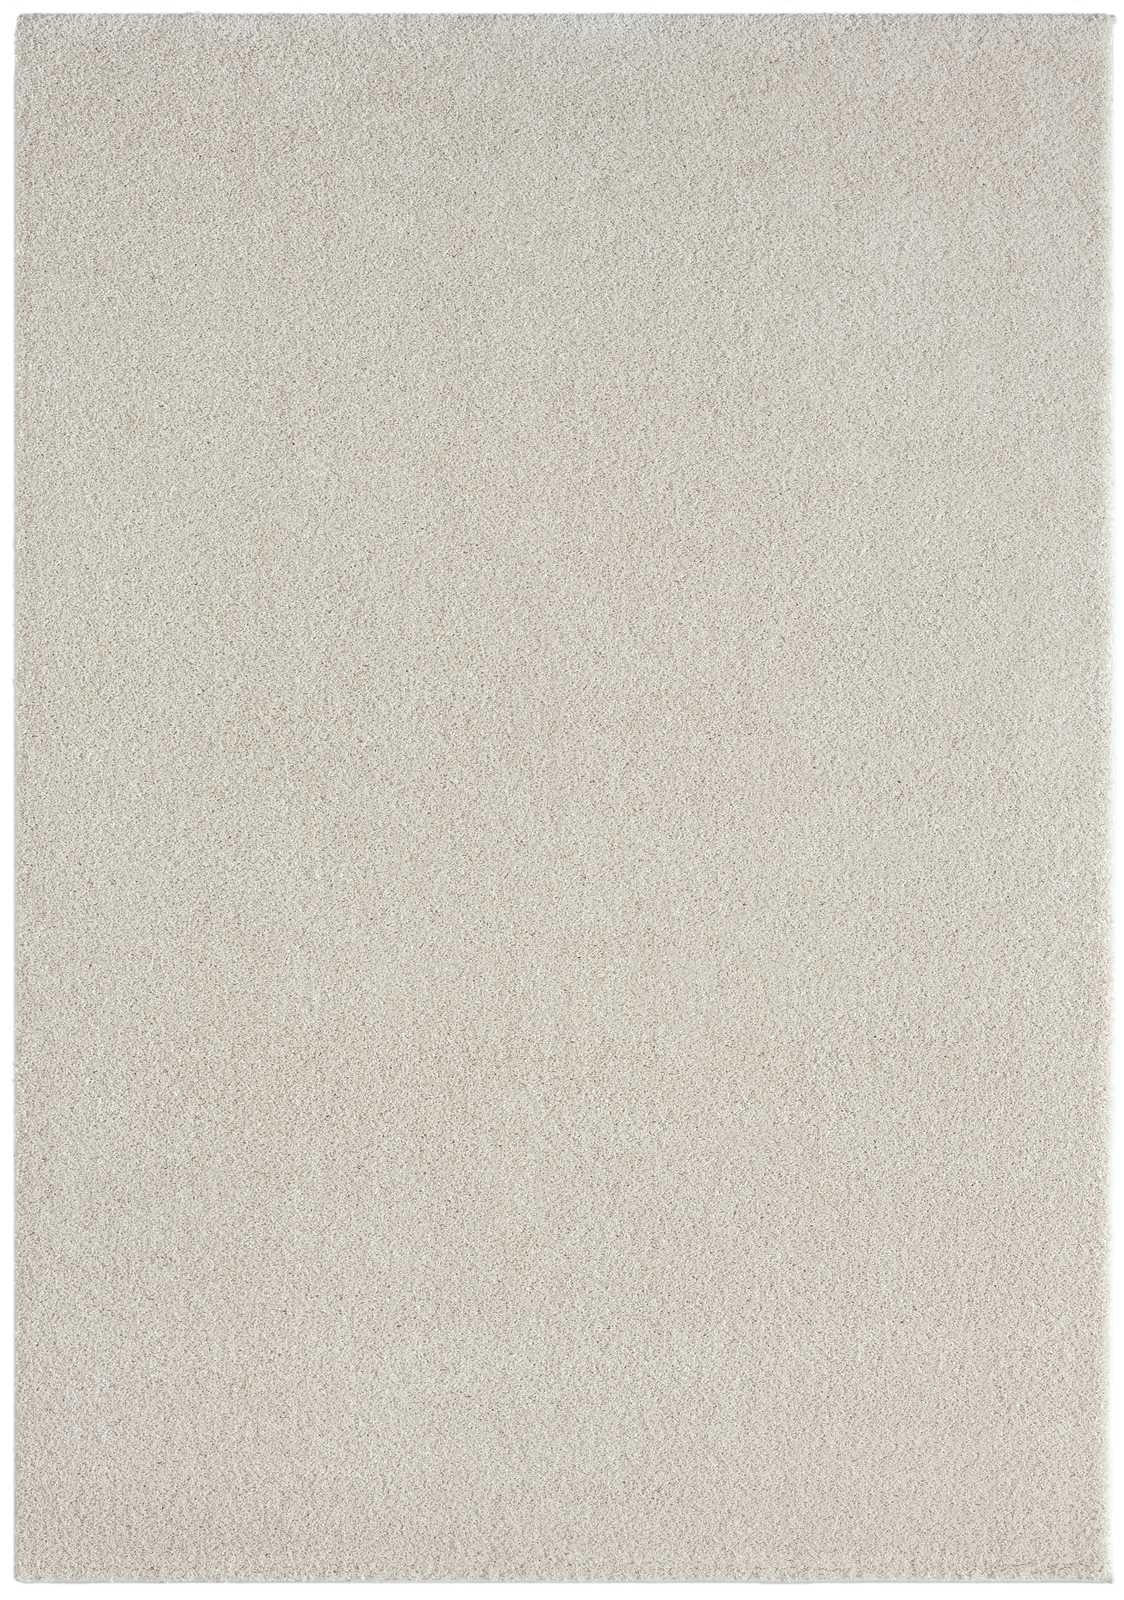             Cream Short Pile Rug - 230 x 160 cm
        